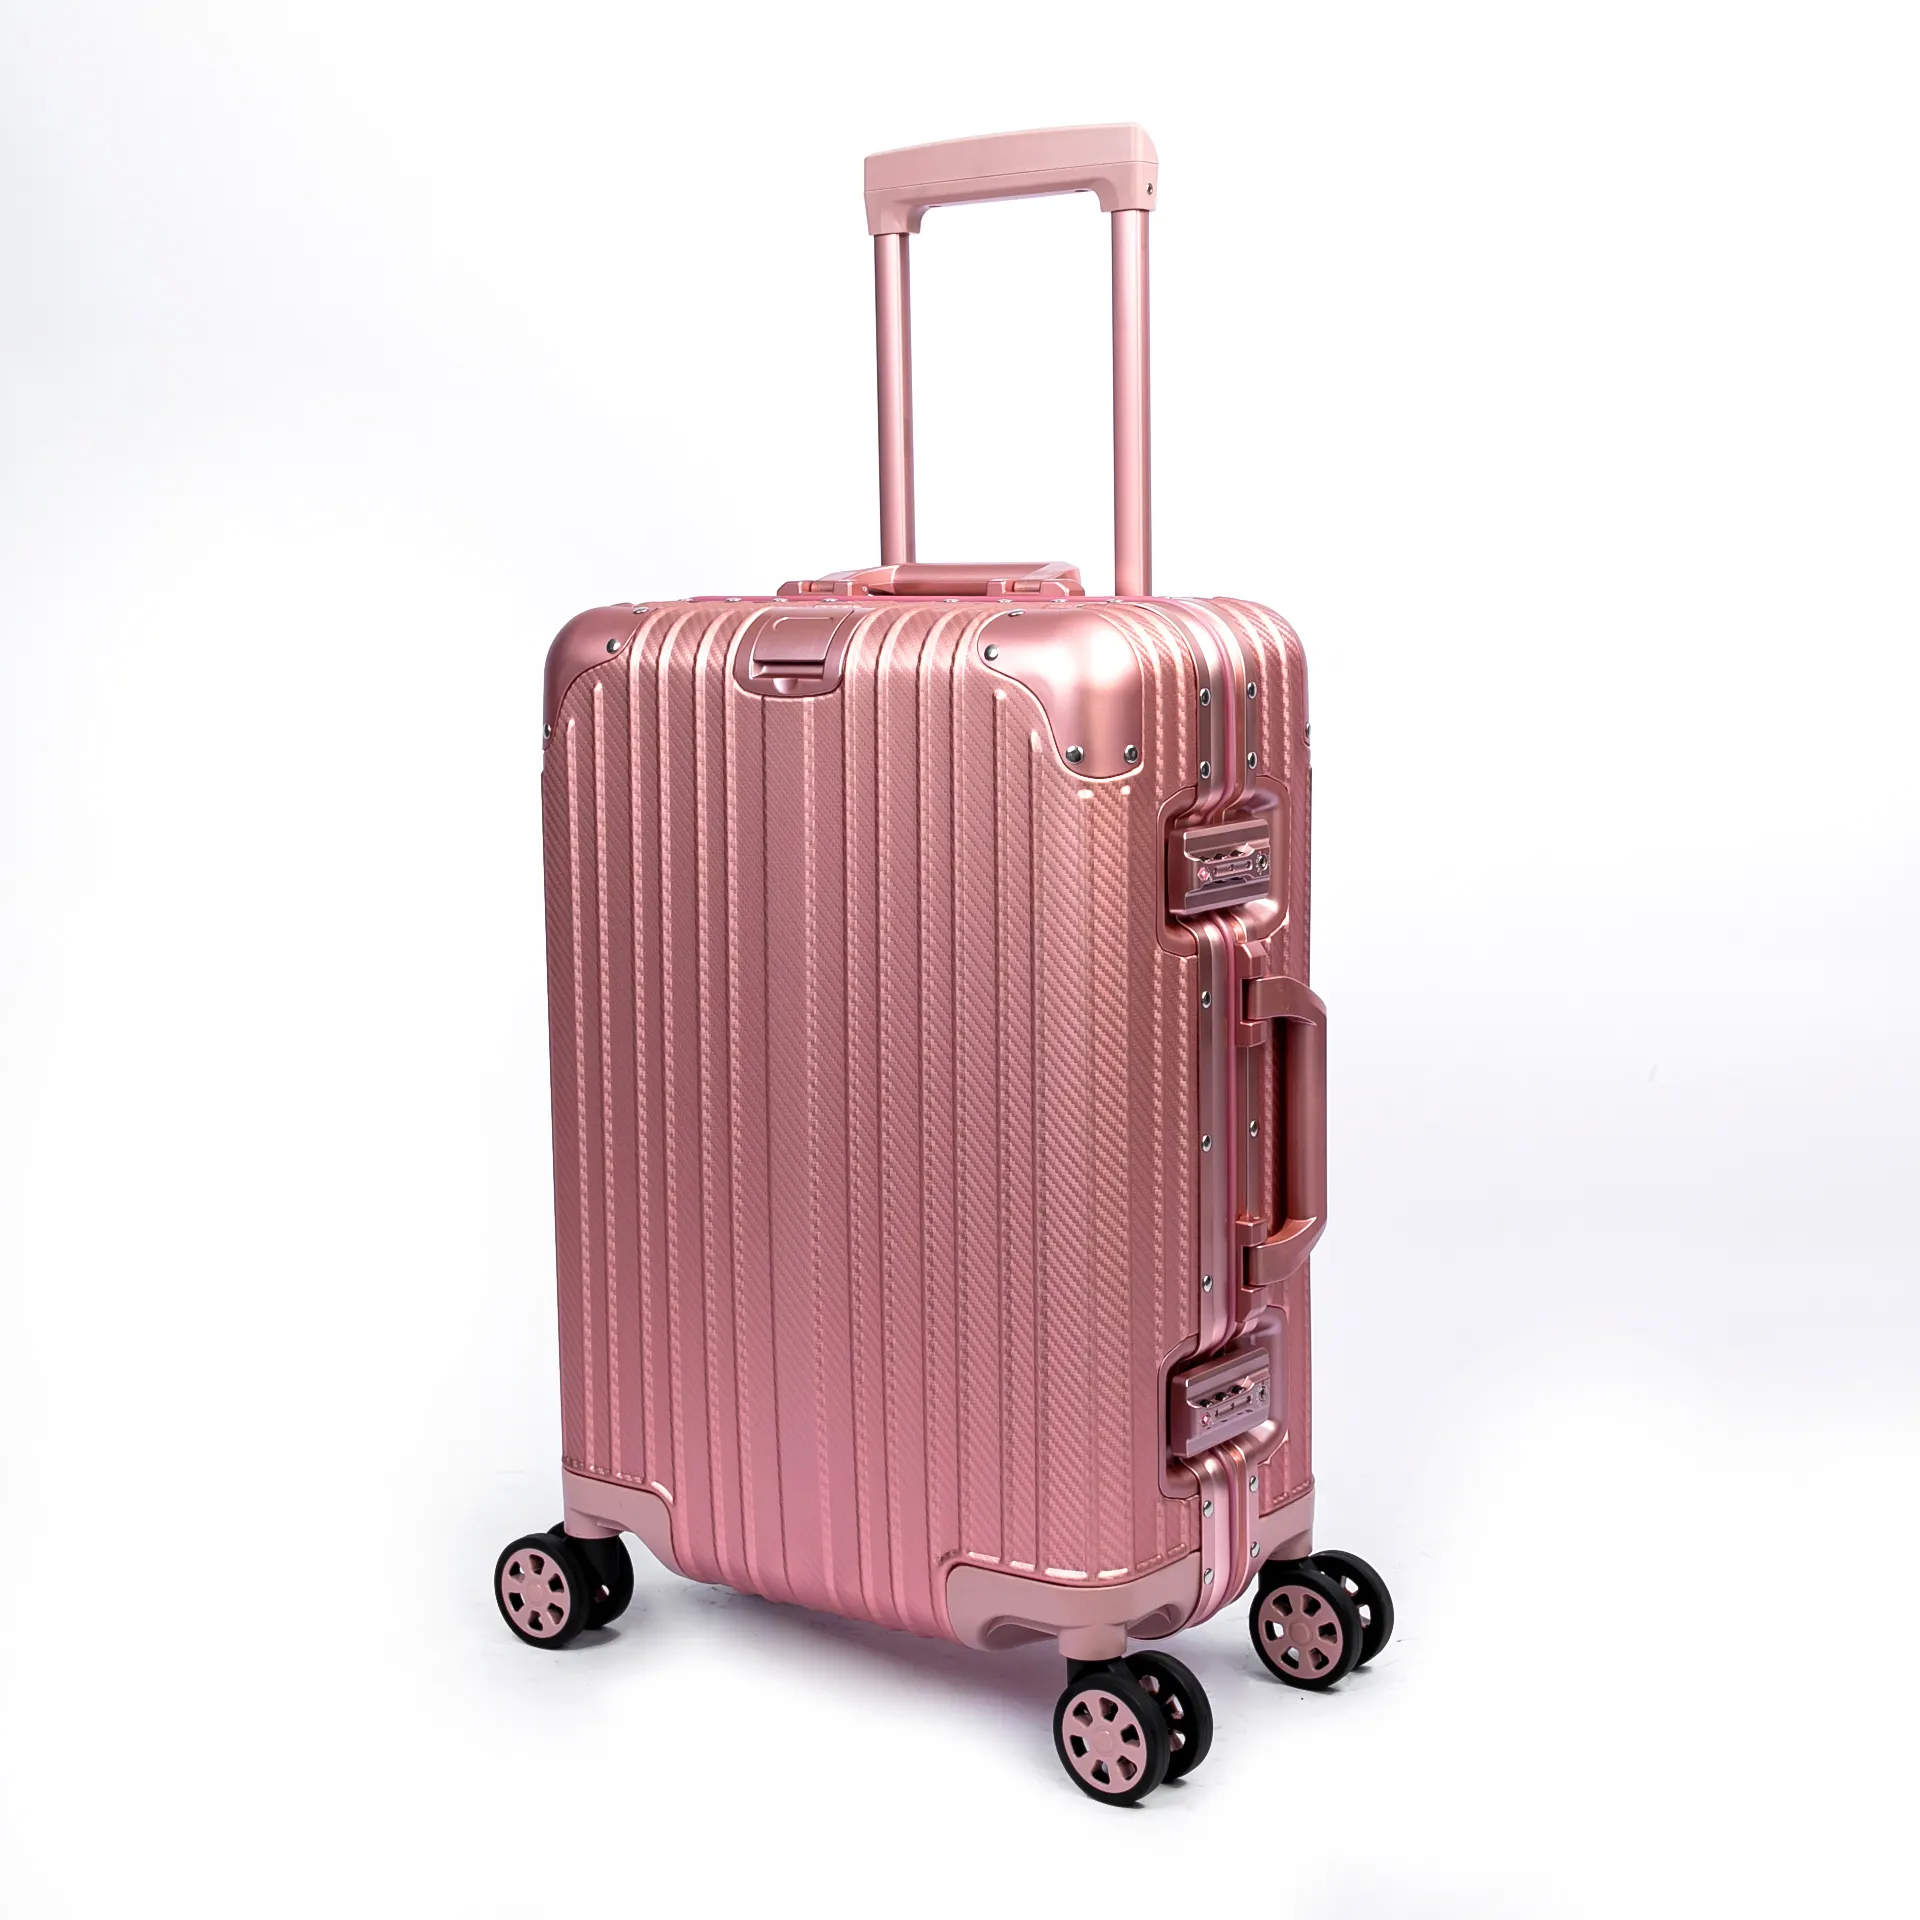 Yeni tasarım gelişmiş alüminyum tekerlekli çanta bavul taşınabilir taşınabilir ışık güvenli bavul üzerinde taşımak